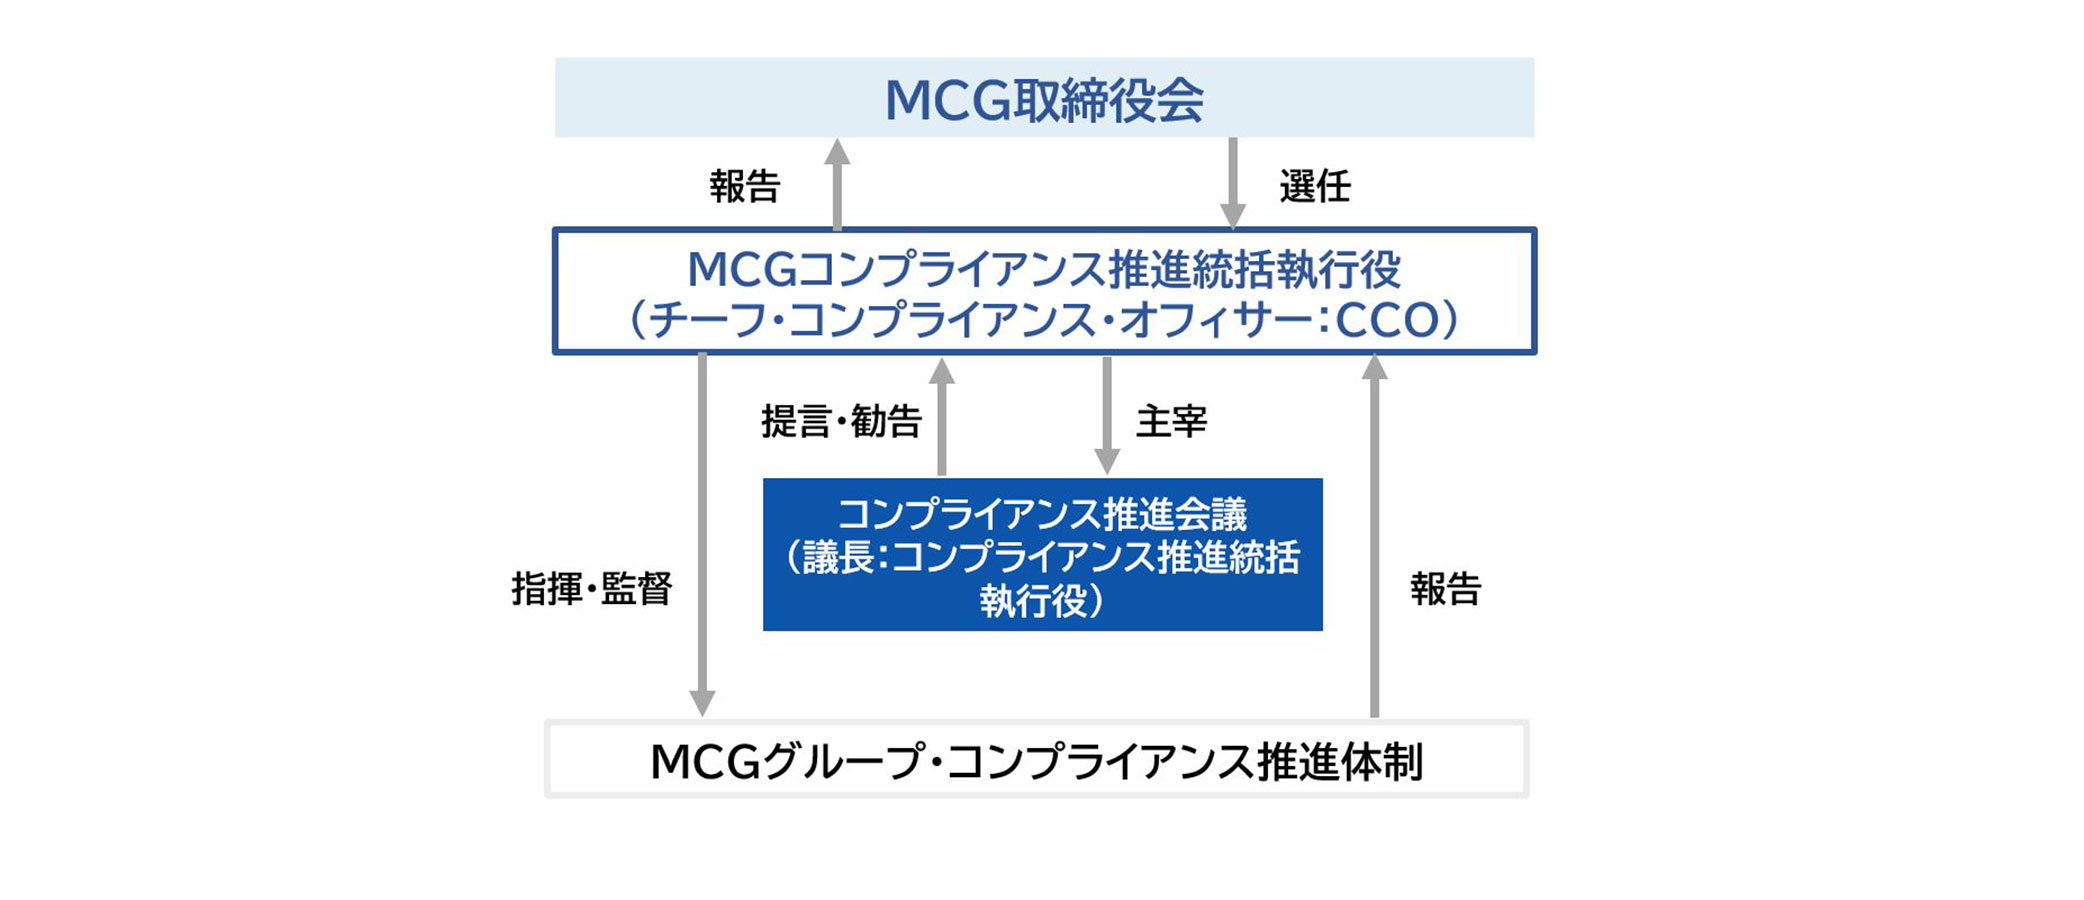 コンプライアンス体制図：「MCHC取締役会」は事業会社に対し、各社CCOへの指導・要請を実施。各社CCOからの報告を受ける。それぞれの事業会社内には、「取締役会」「コンプライアンス推進統括執行役」「コンプライアンス推進委員会（委員長：コンプライアンス推進統括執行役）」「コンプライアンス推進体制」がある。「取締役会」は「コンプライアンス推進統括執行役」の選任を行い、報告を受け、「コンプライアンス推進体制」を指揮・監督、報告を受ける。「コンプライアンス推進統括執行役」は「コンプライアンス推進委員会（委員長：コンプライアンス推進統括執行役）」を主宰し、提言・勧告を受ける。また、「MCHC取締役会」は「MCHCグループ・コンプライアンス推進統括執行役（グループ・チーフ・コンプライアンス・オフィサー：グループCCO）」を選任し、報告を受ける。「MCHCグループ・コンプライアンス推進統括執行役（グループ・チーフ・コンプライアンス・オフィサー：グループCCO）」は「執行役会議」に報告を実施し、提言・勧告を受け、「MCHCグループ・コンプライアンス推進体制」を指揮・監督、報告を受ける。